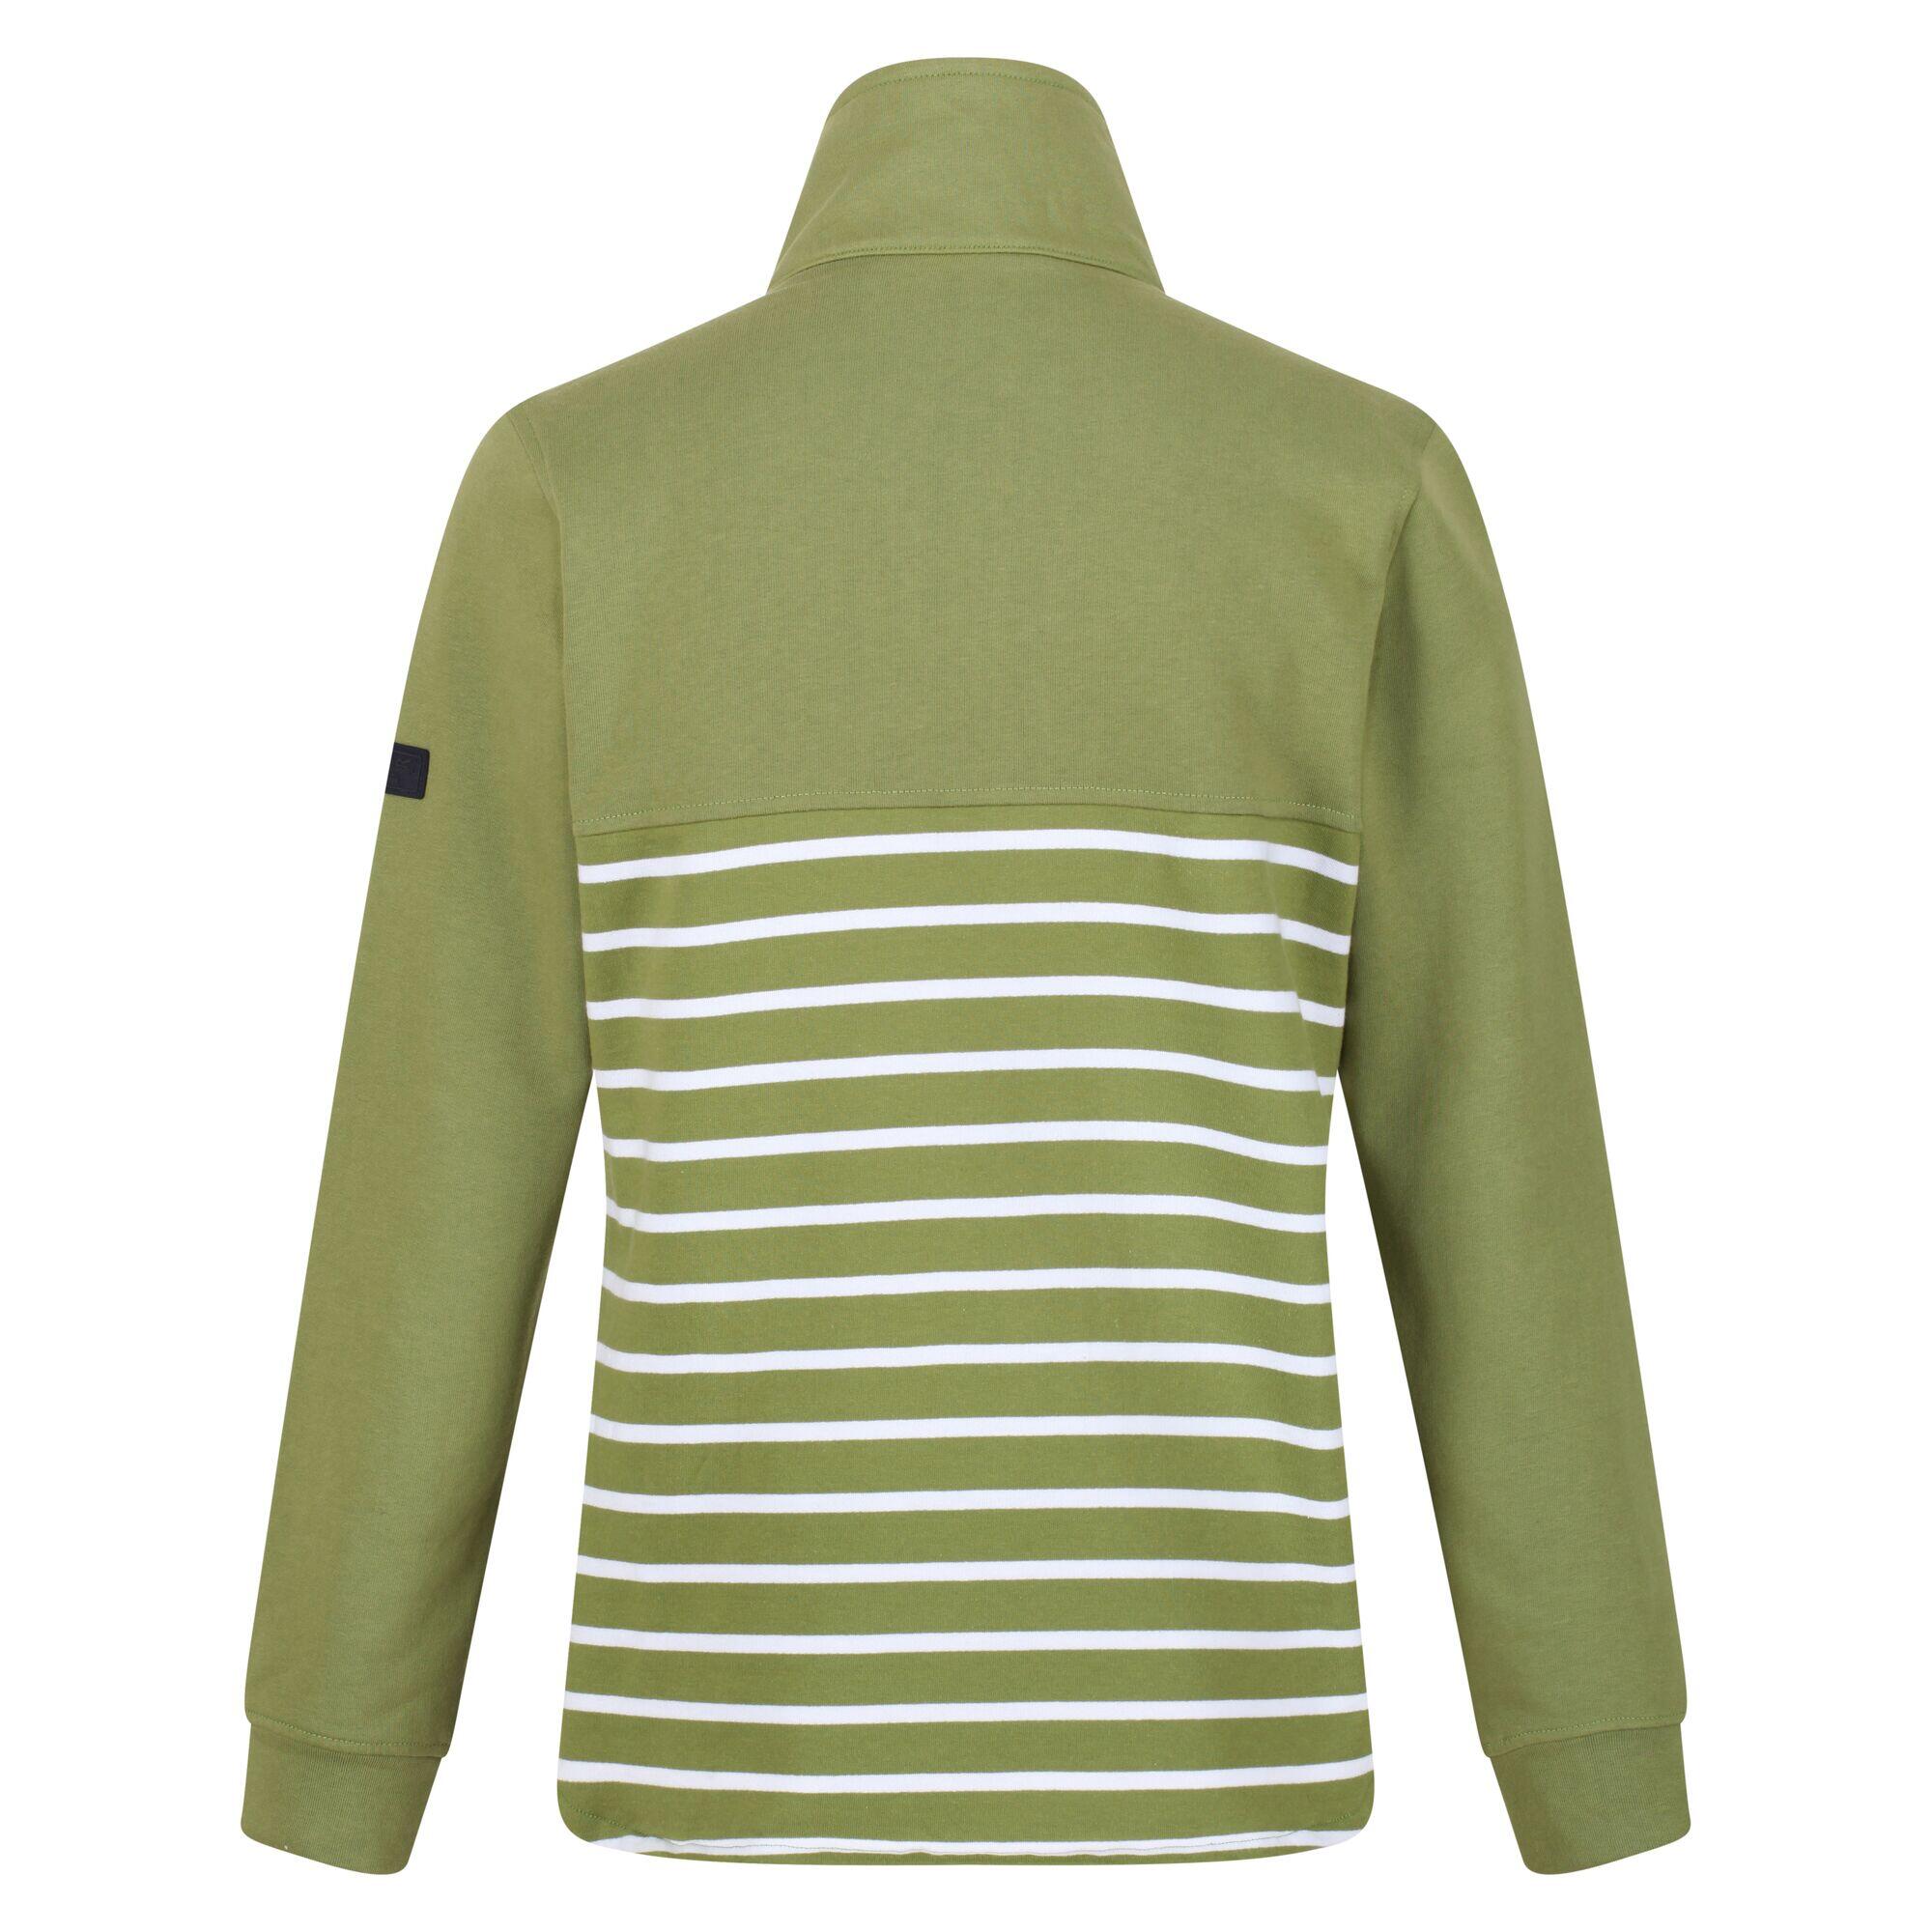 Womens/Ladies Camiola II Stripe Fleece Top (Green Fields/White) 2/5